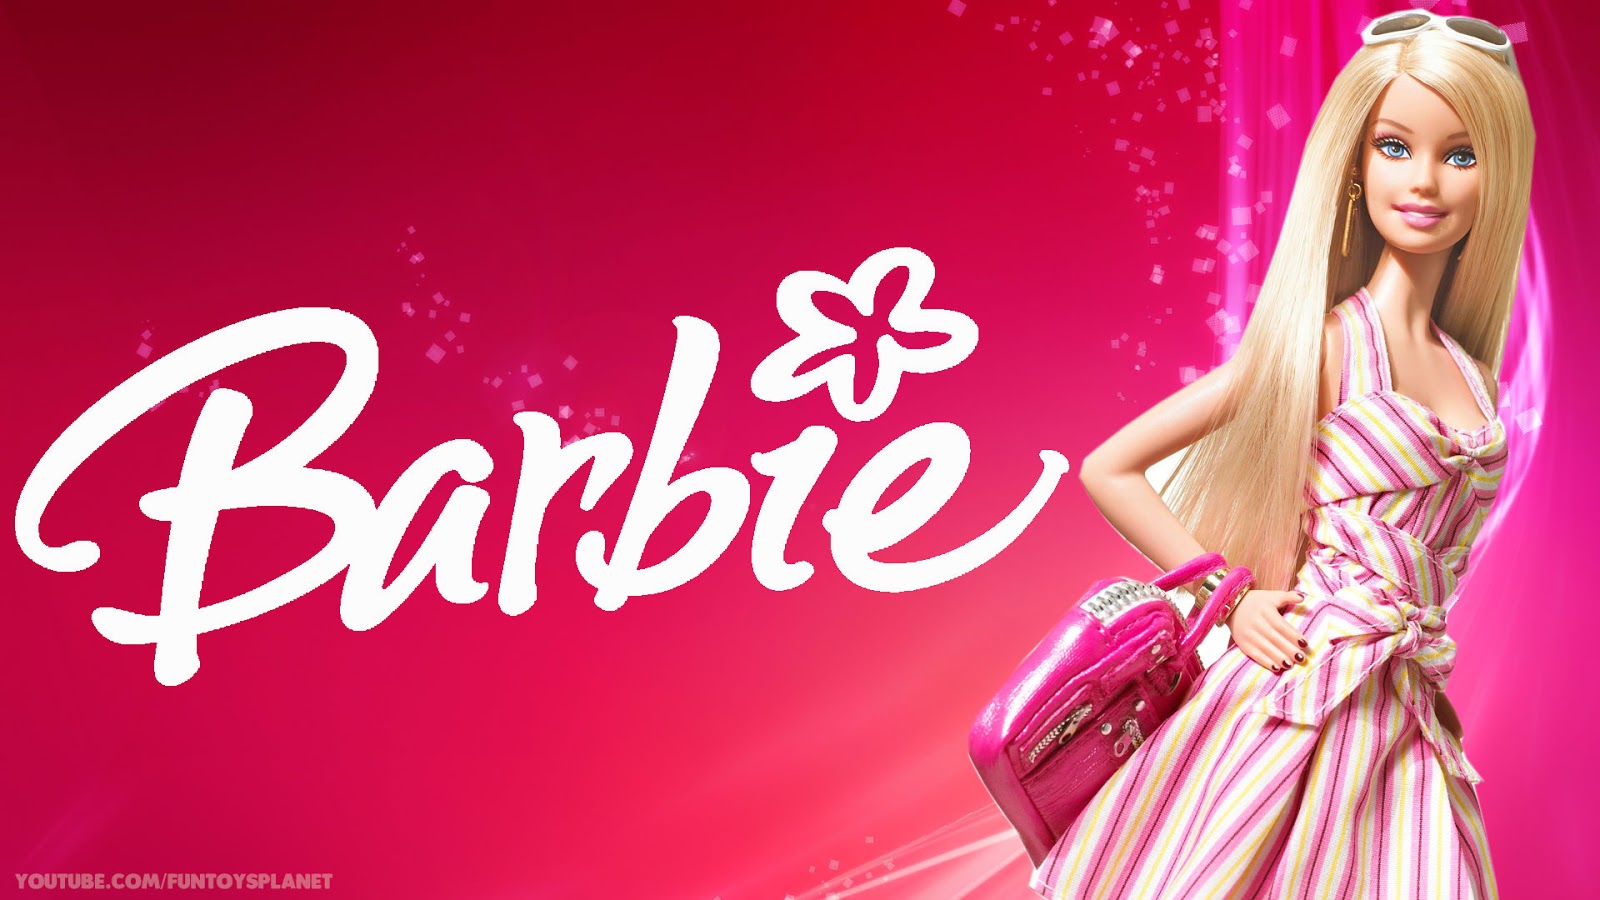 Barbie, Barbie Wallpaper, Barbie Wallpaper Hd, Barbie - Barbie Wall Paper Hd , HD Wallpaper & Backgrounds